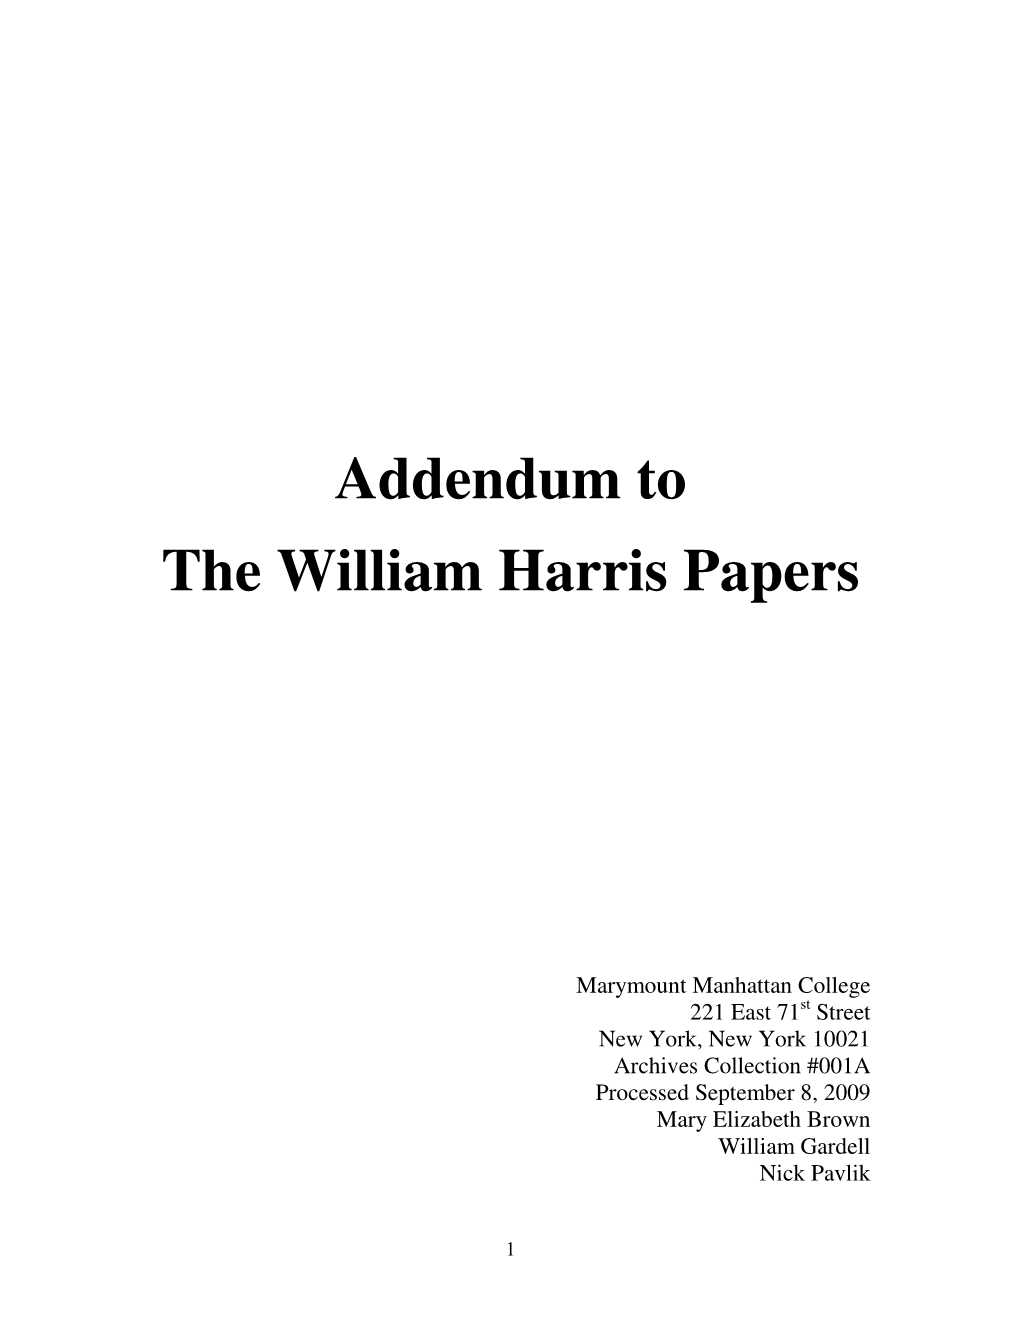 Addendum to the William Harris Papers